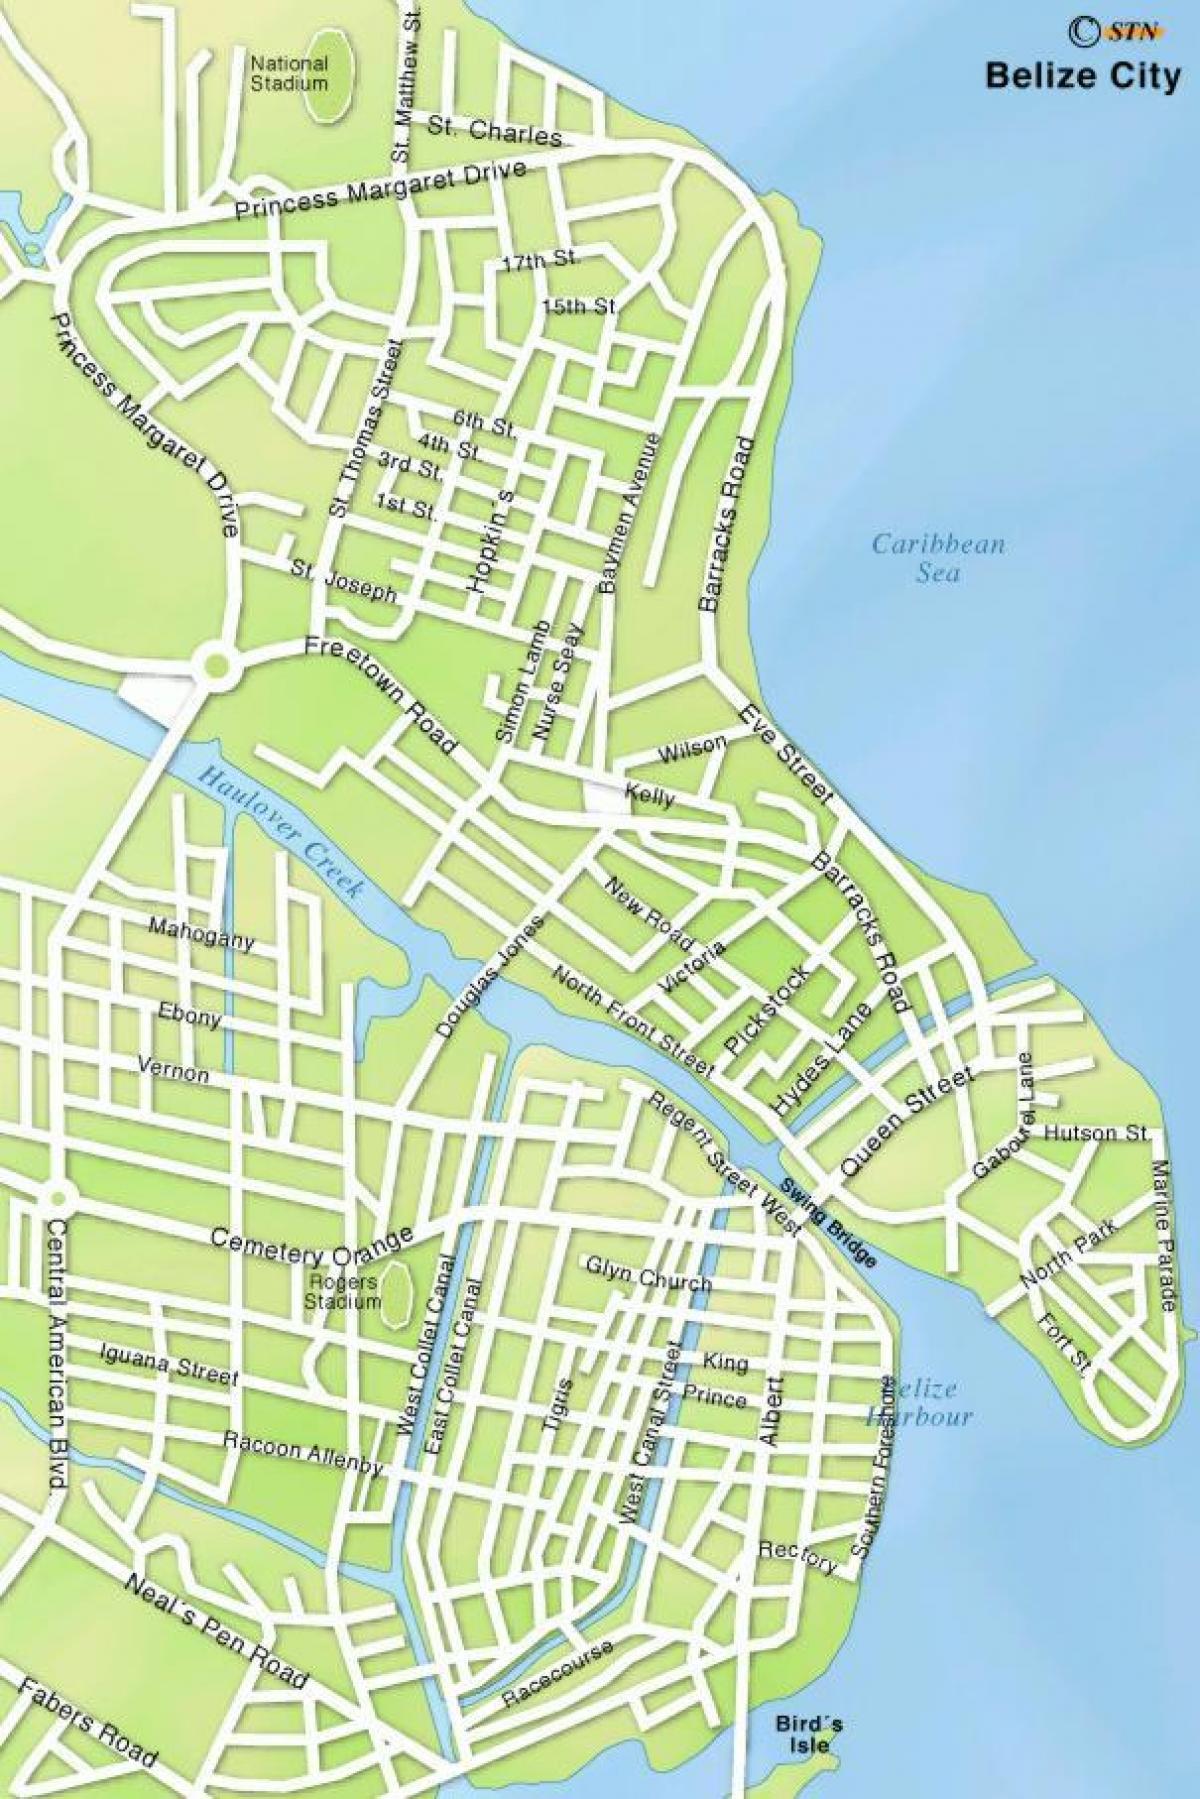 peta kota Belize city jalan-jalan